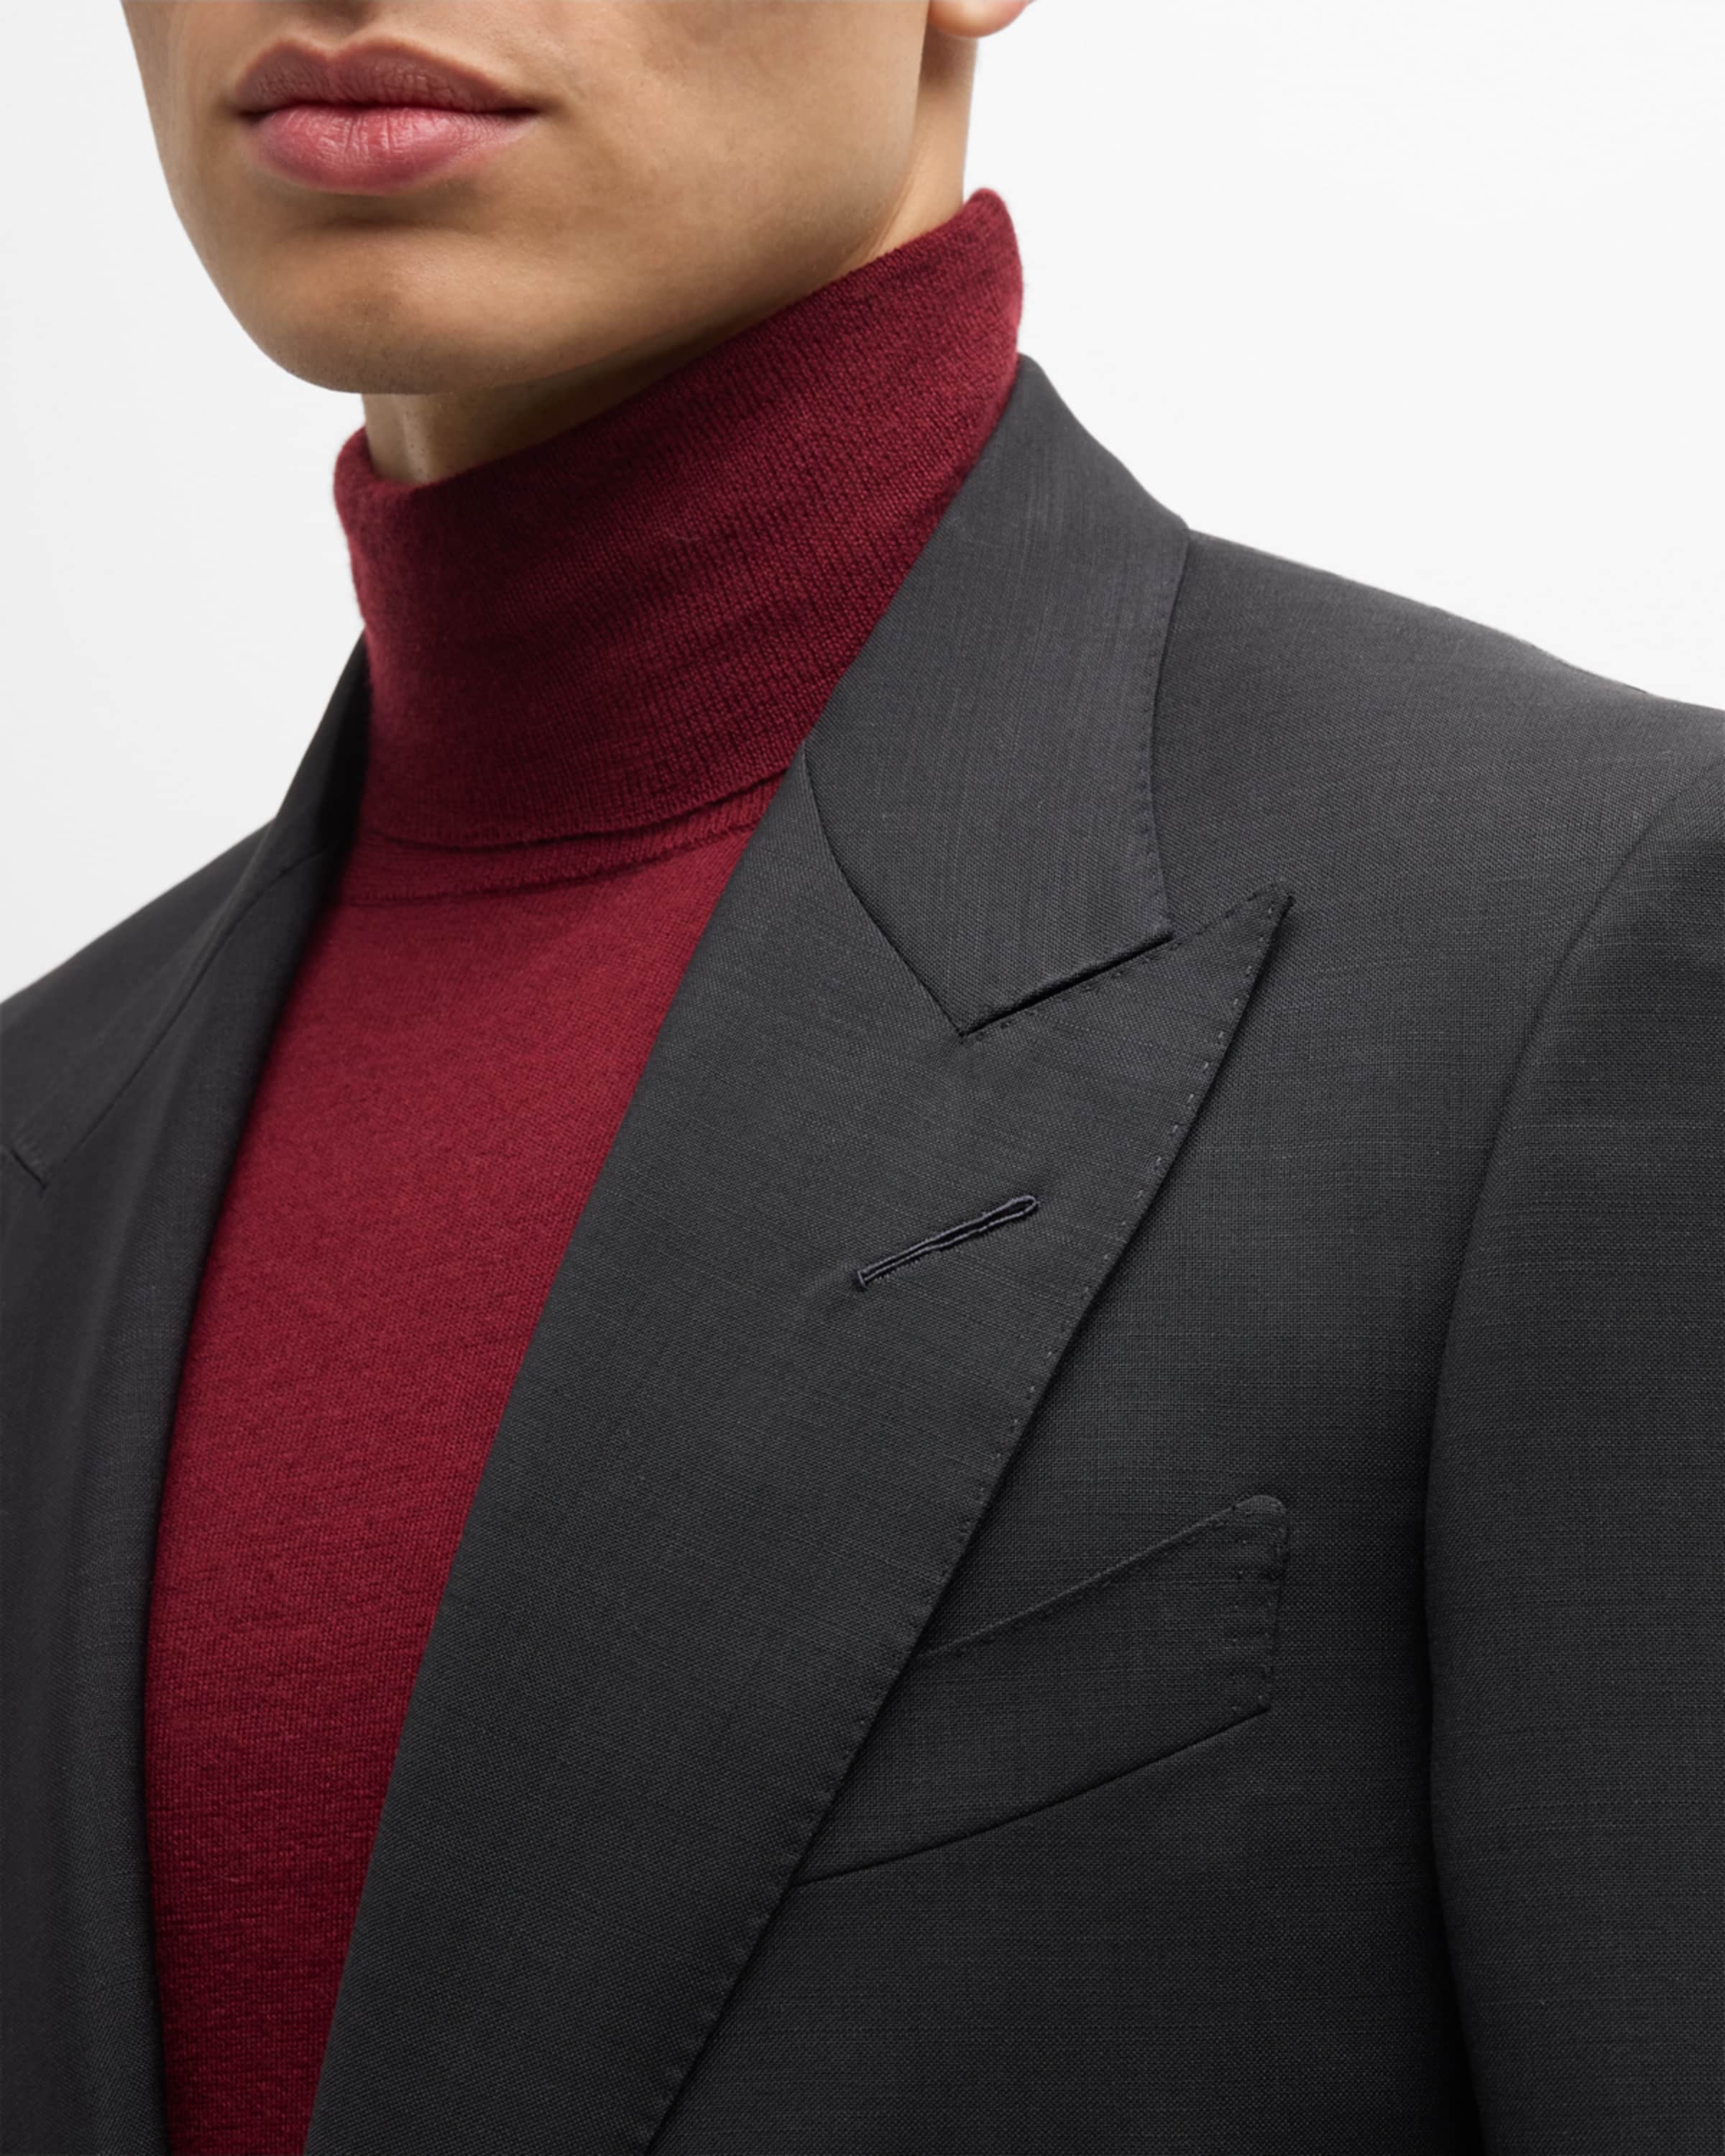 Men's Shelton Solid Mohair Suit - 2